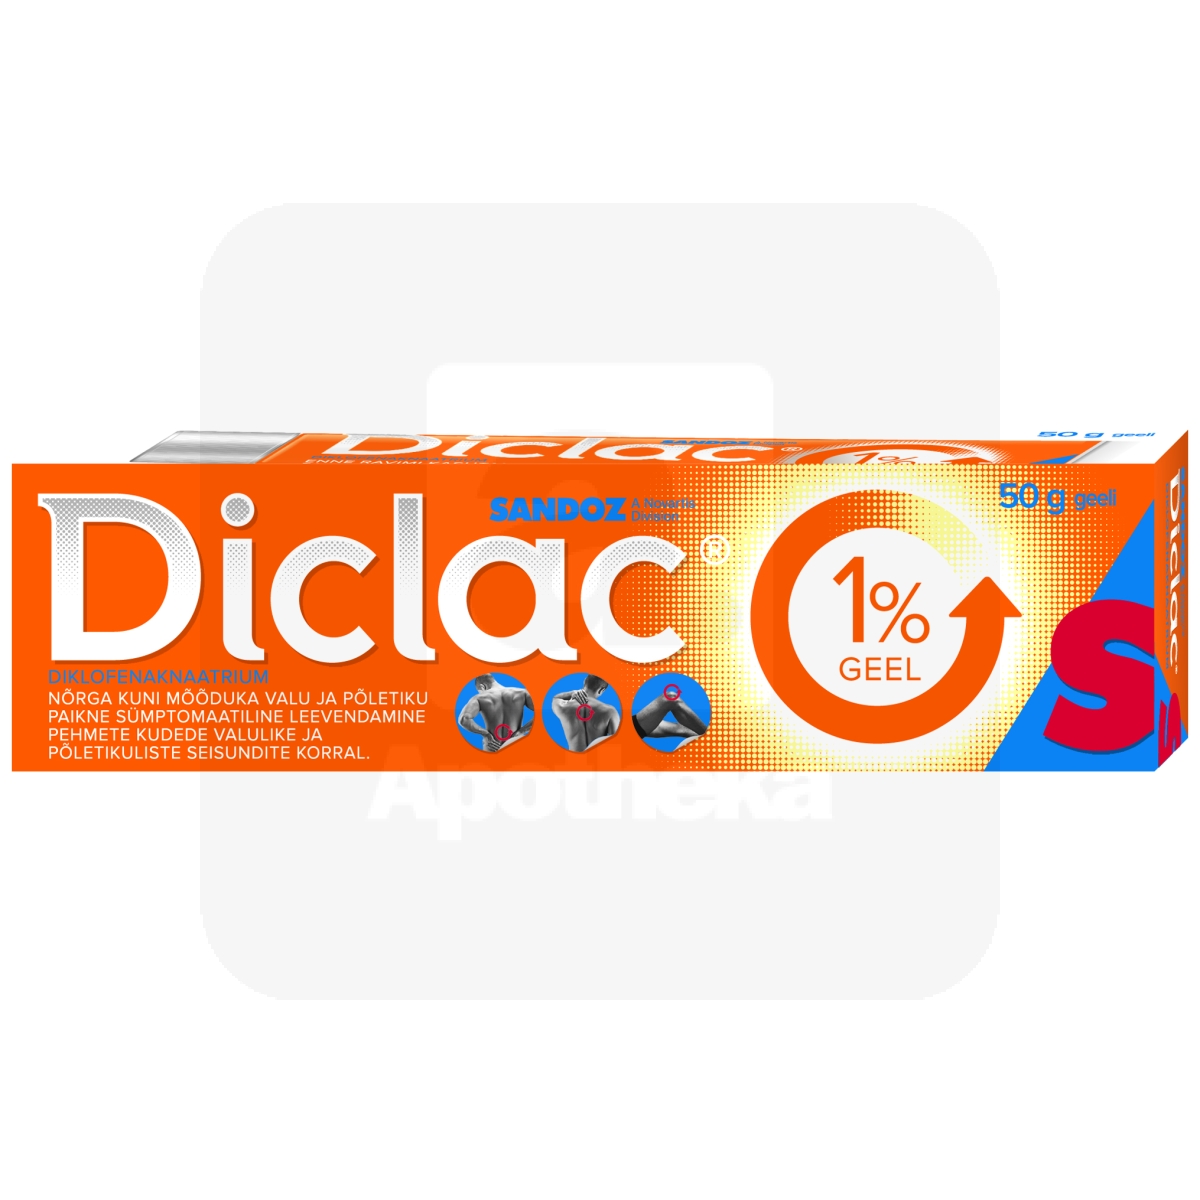 DICLAC GEEL 1% 50G